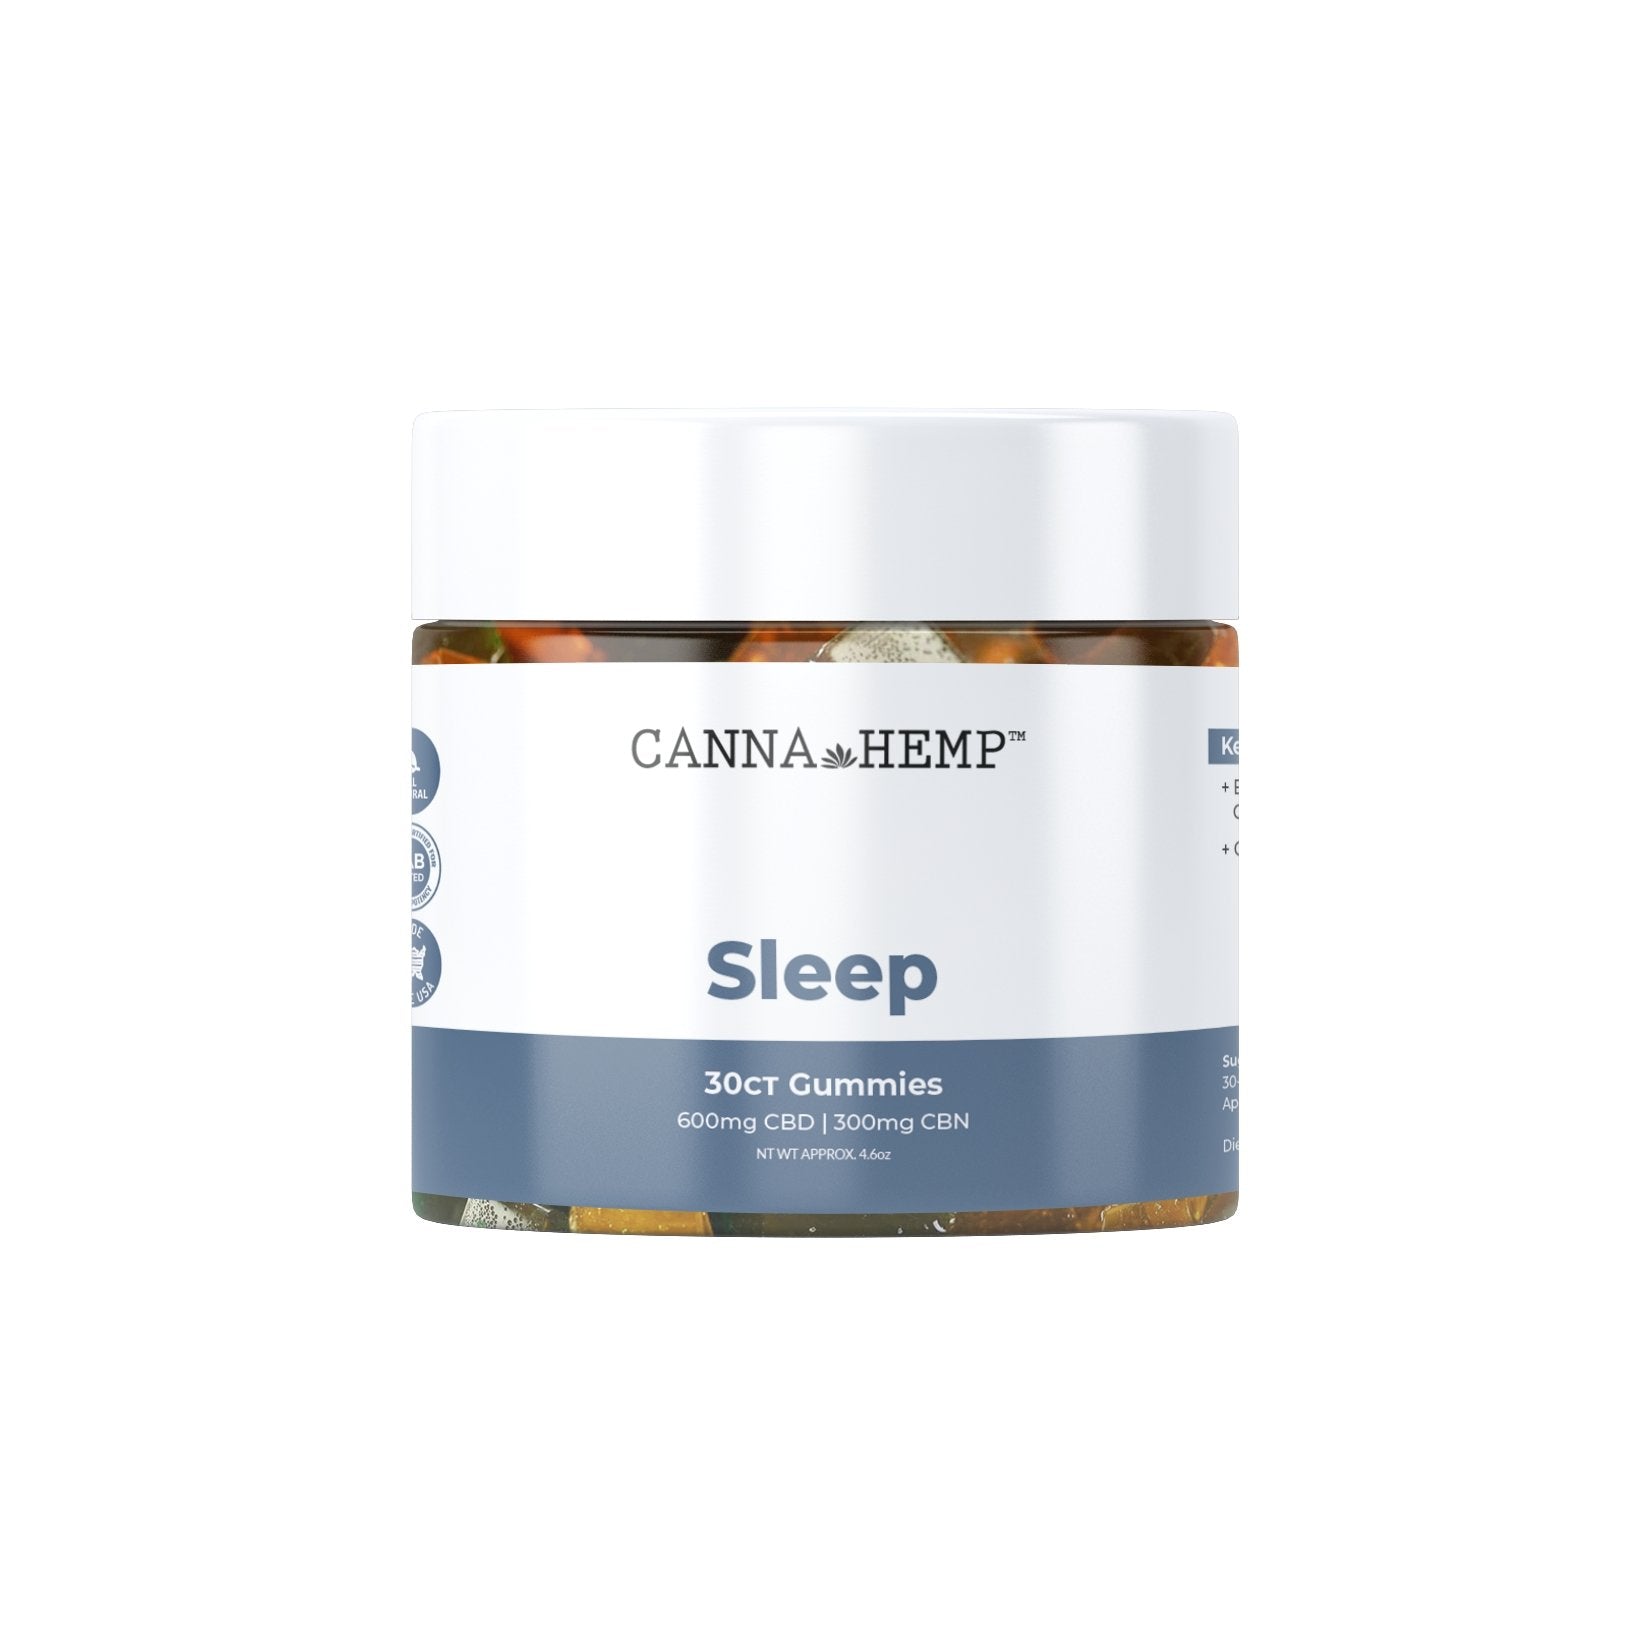 CannaHemp Sleep Gummies 30ct Best Price